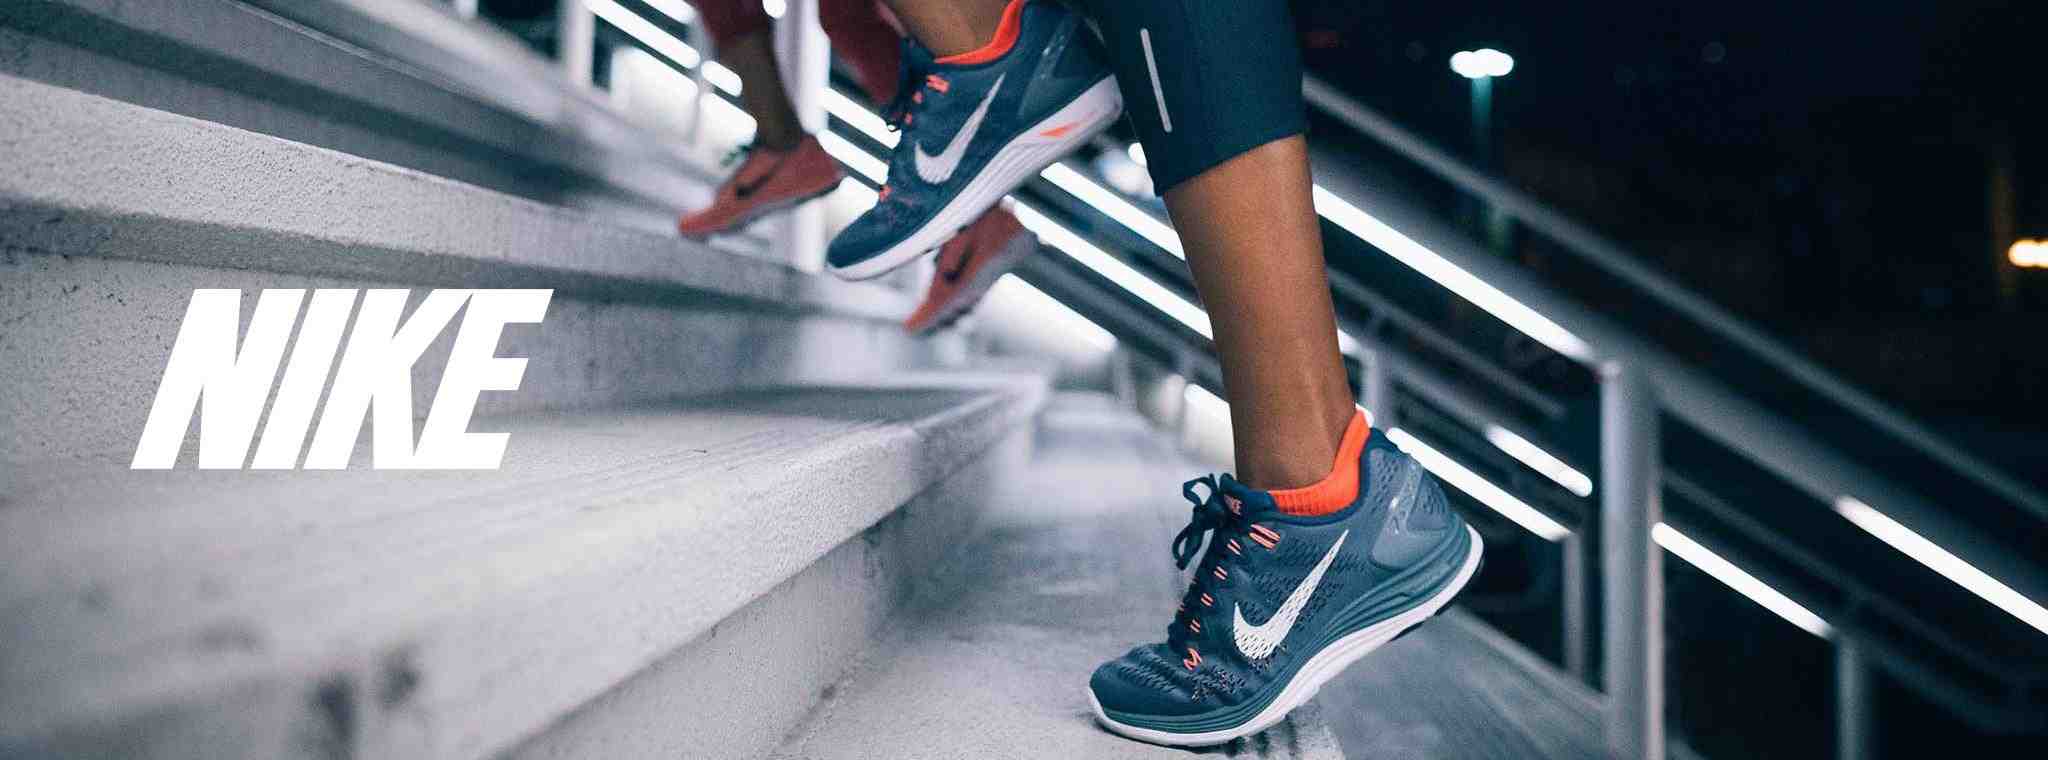 Nike – Arequipa